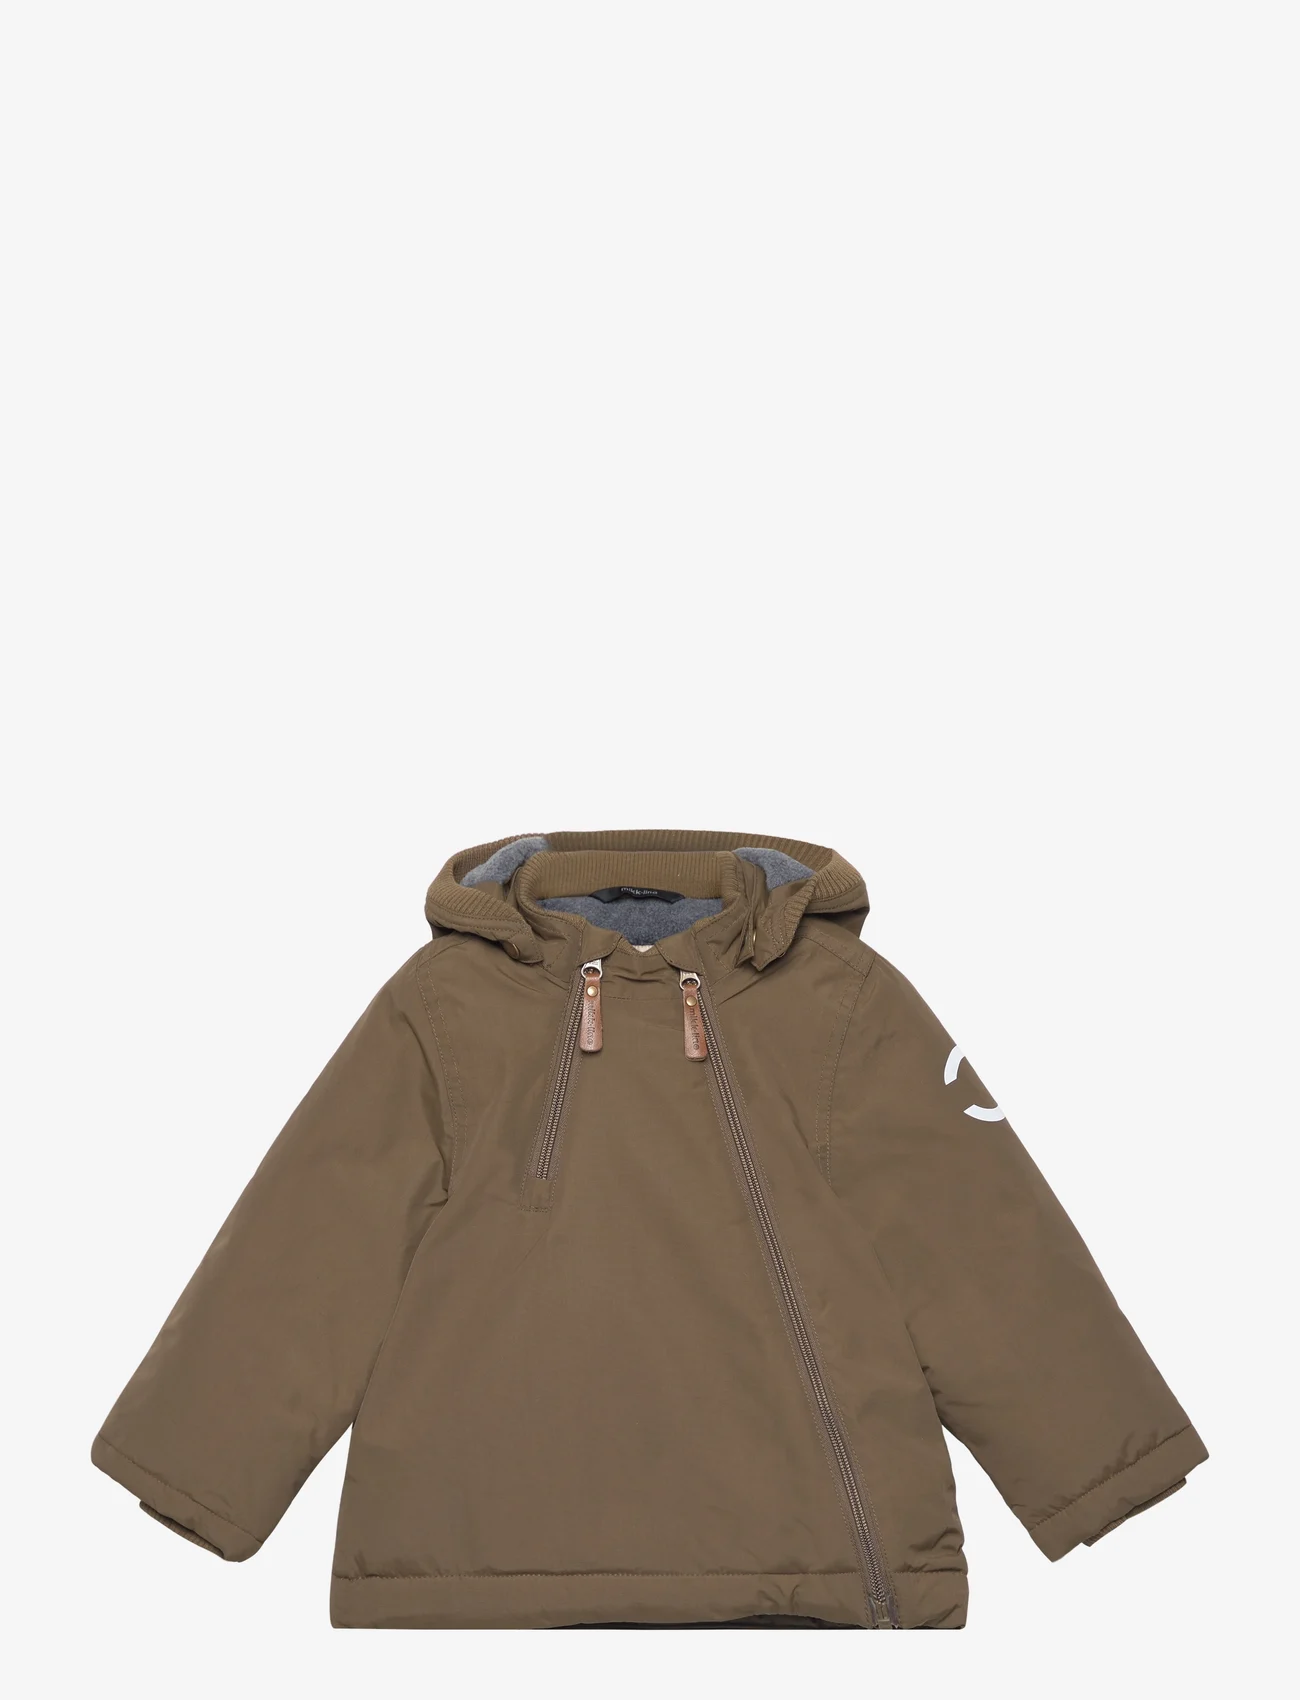 mikk-line - Nylon Baby Jacket - Solid - ziemas jakas - beech - 0